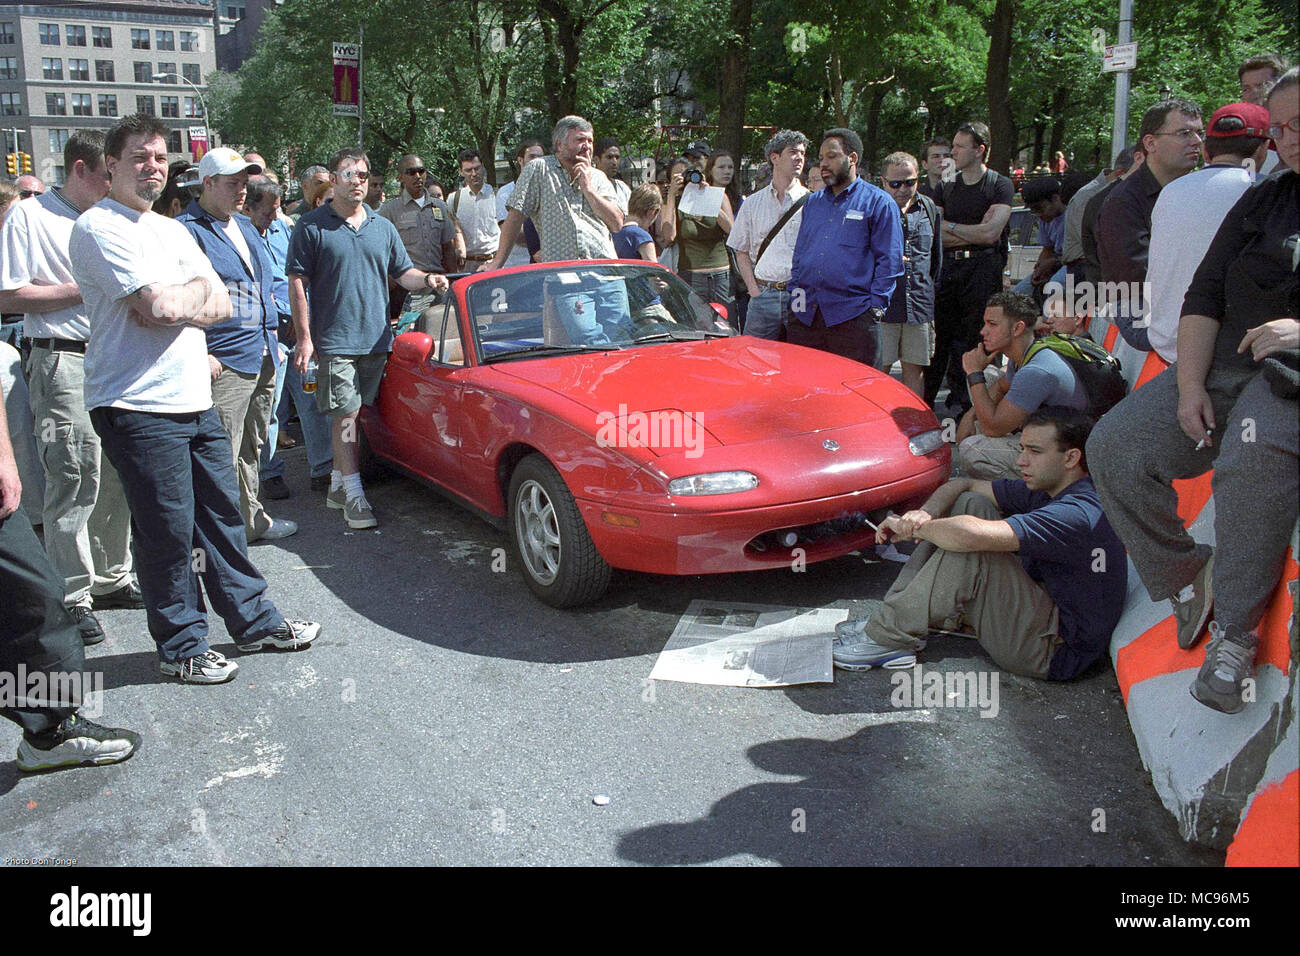 Les New-yorkais se tenir en état de choc et d'incrédulité pendant l'écoute de nouvelles mises à jour sur une voiture en stationnement, radio quelques heures après l'attaque terroriste sur le World Trade Center de New York le 11 septembre 2001 DON photo photographe TONGE Banque D'Images